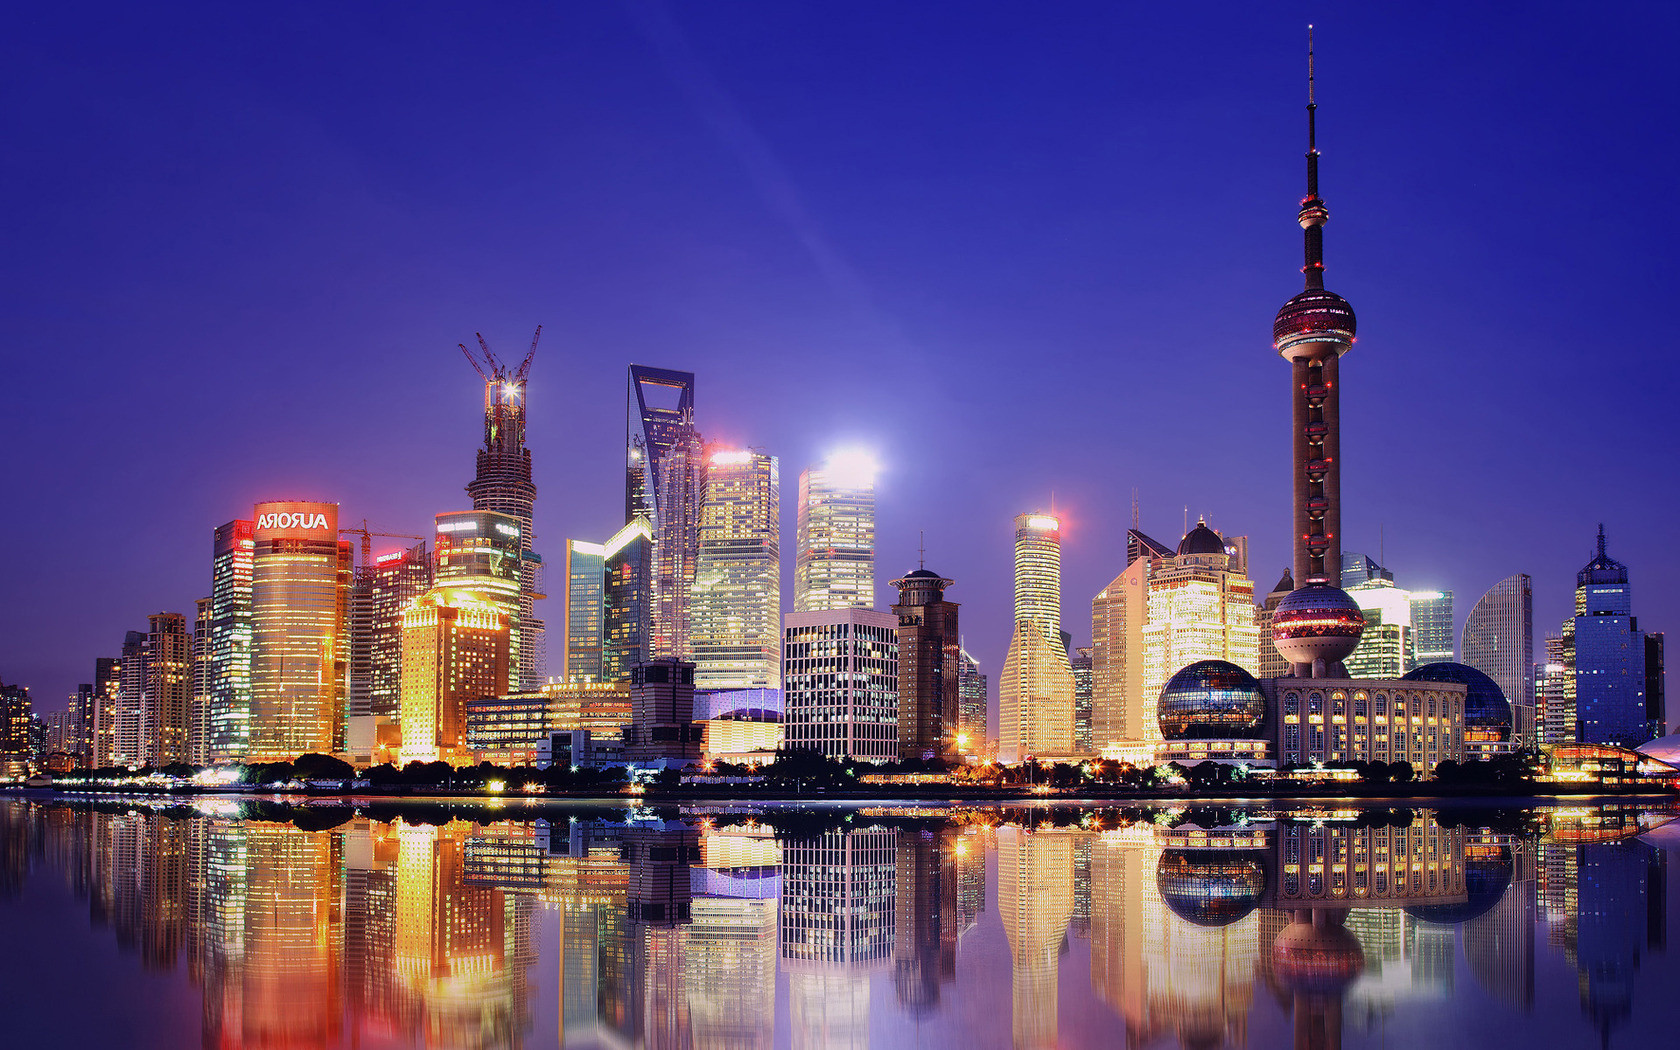 Hành trình du lịch tìm hiểu và khám phá nét đẹp muôn màu bến Thượng Hải - ảnh 2